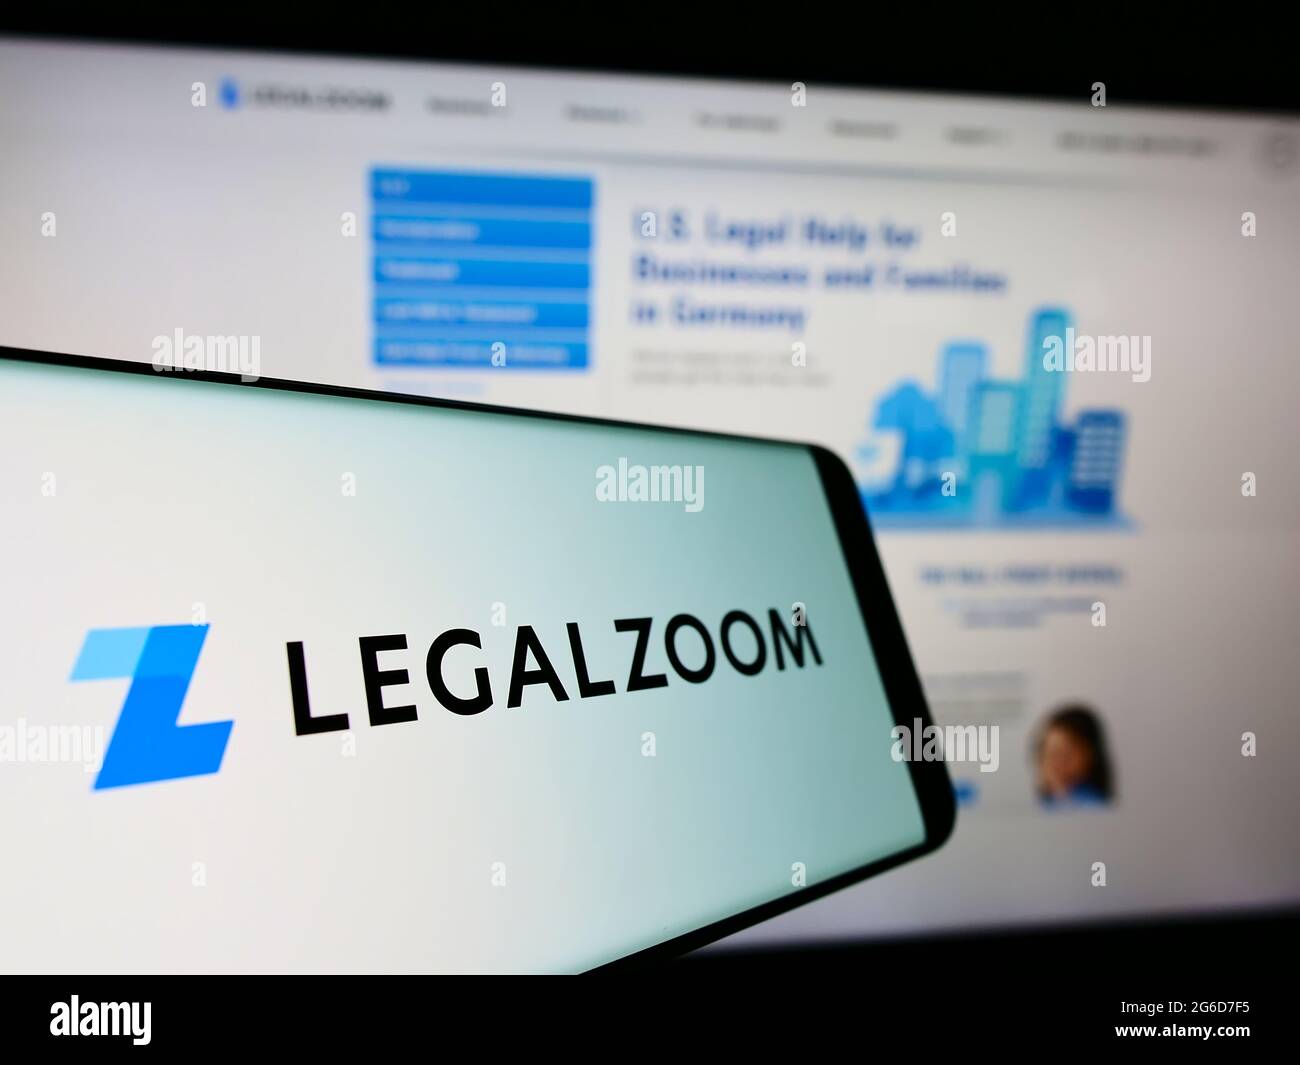 Téléphone mobile avec logo de la société américaine de technologie juridique LegalZoom.com Inc. À l'écran devant le site Web. Mise au point au centre-gauche de l'écran du téléphone. Banque D'Images